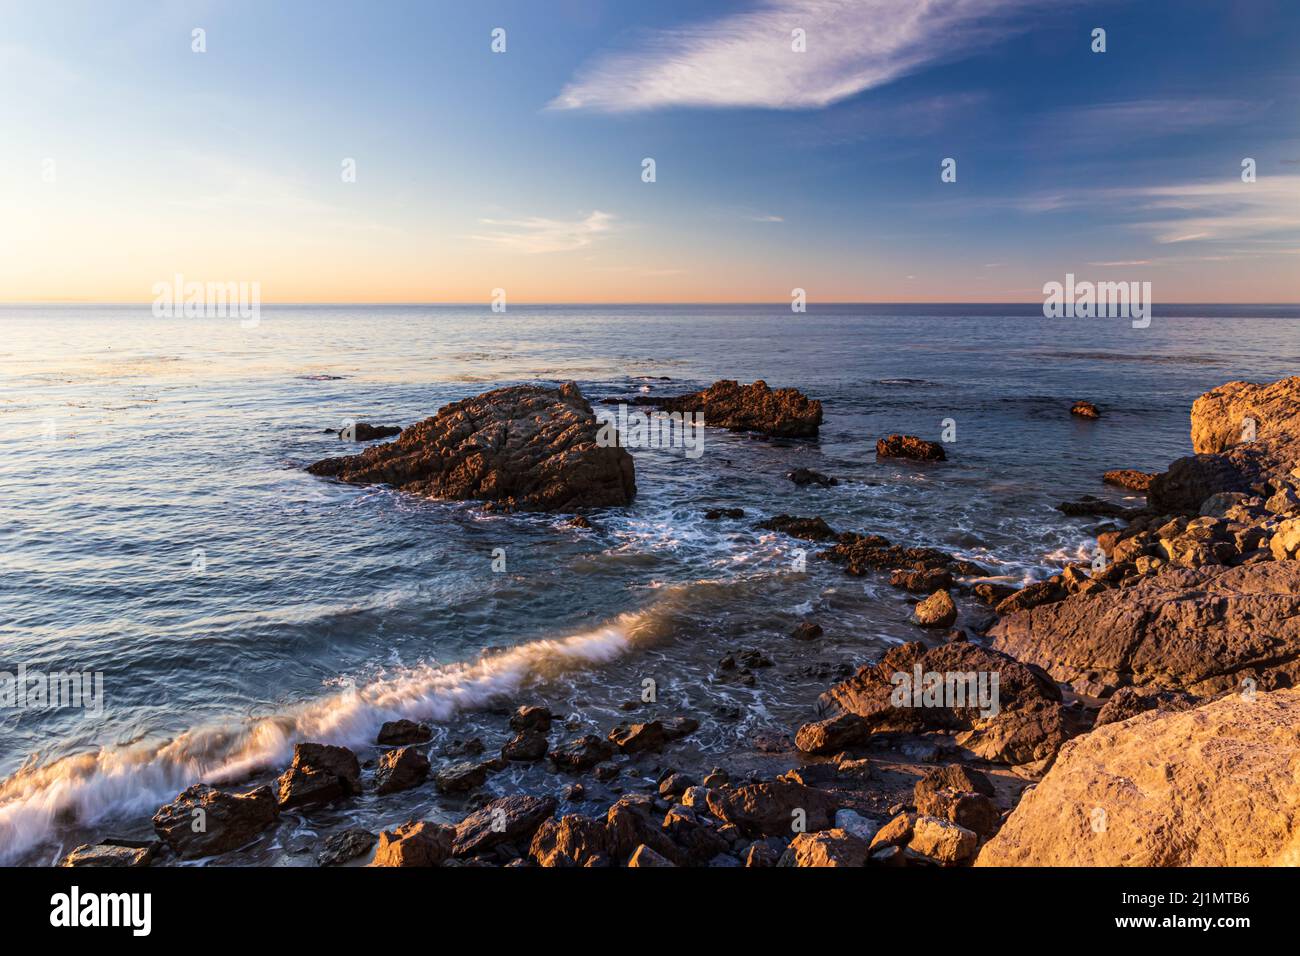 Spiaggia rocciosa a Malibu, California, al mattino presto. Tranquillo oceano Pacifico in lontananza; cielo blu e nuvole in testa. Foto Stock